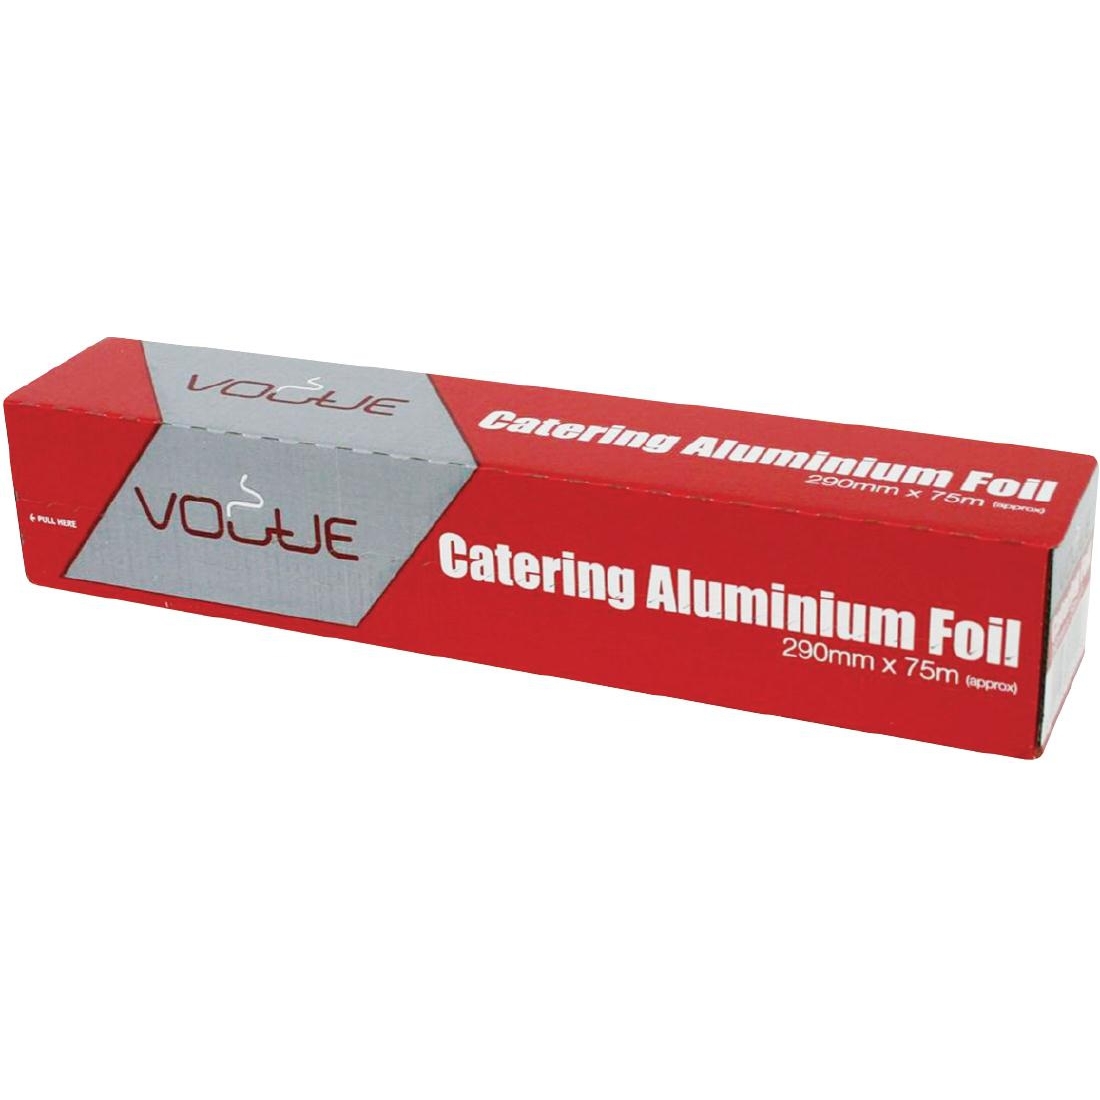 Vogue Aluminium Foil 300mm